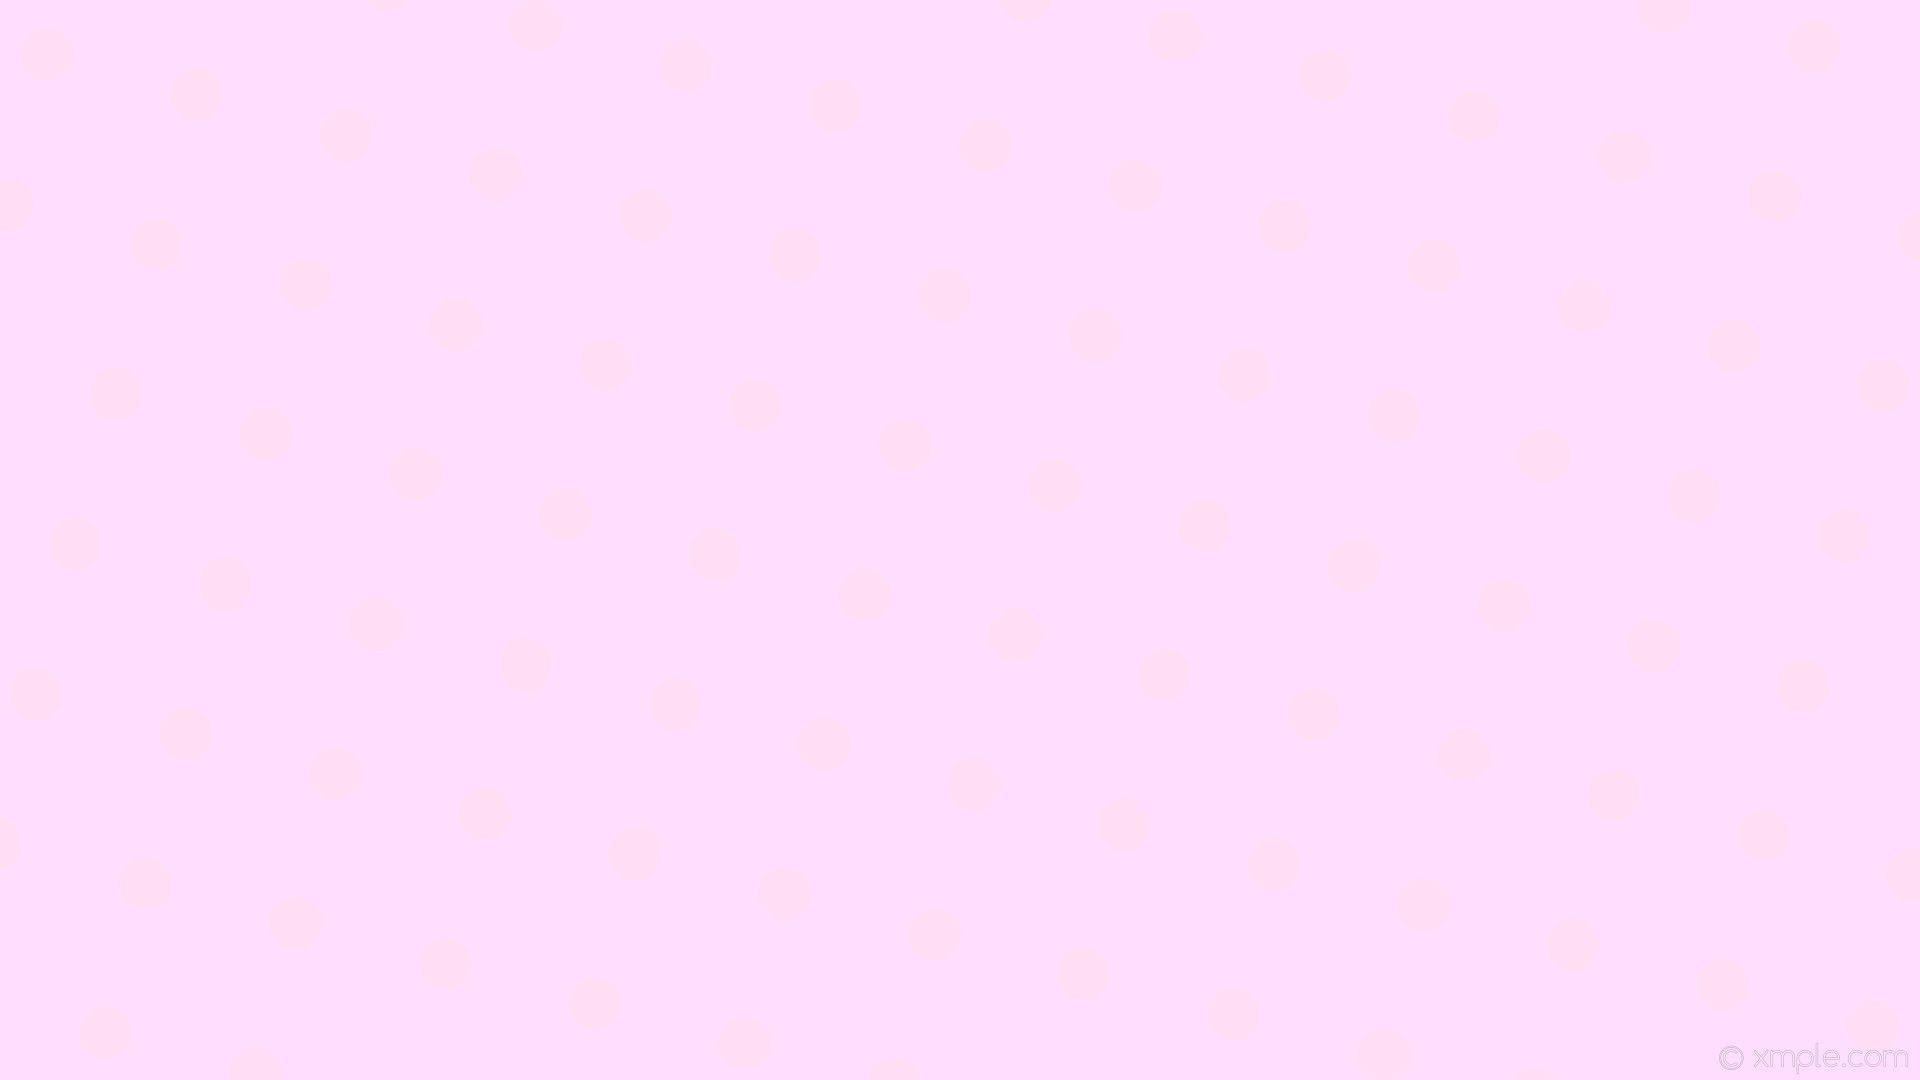 Solid Pastel Pink Wallpapers - Top Những Hình Ảnh Đẹp